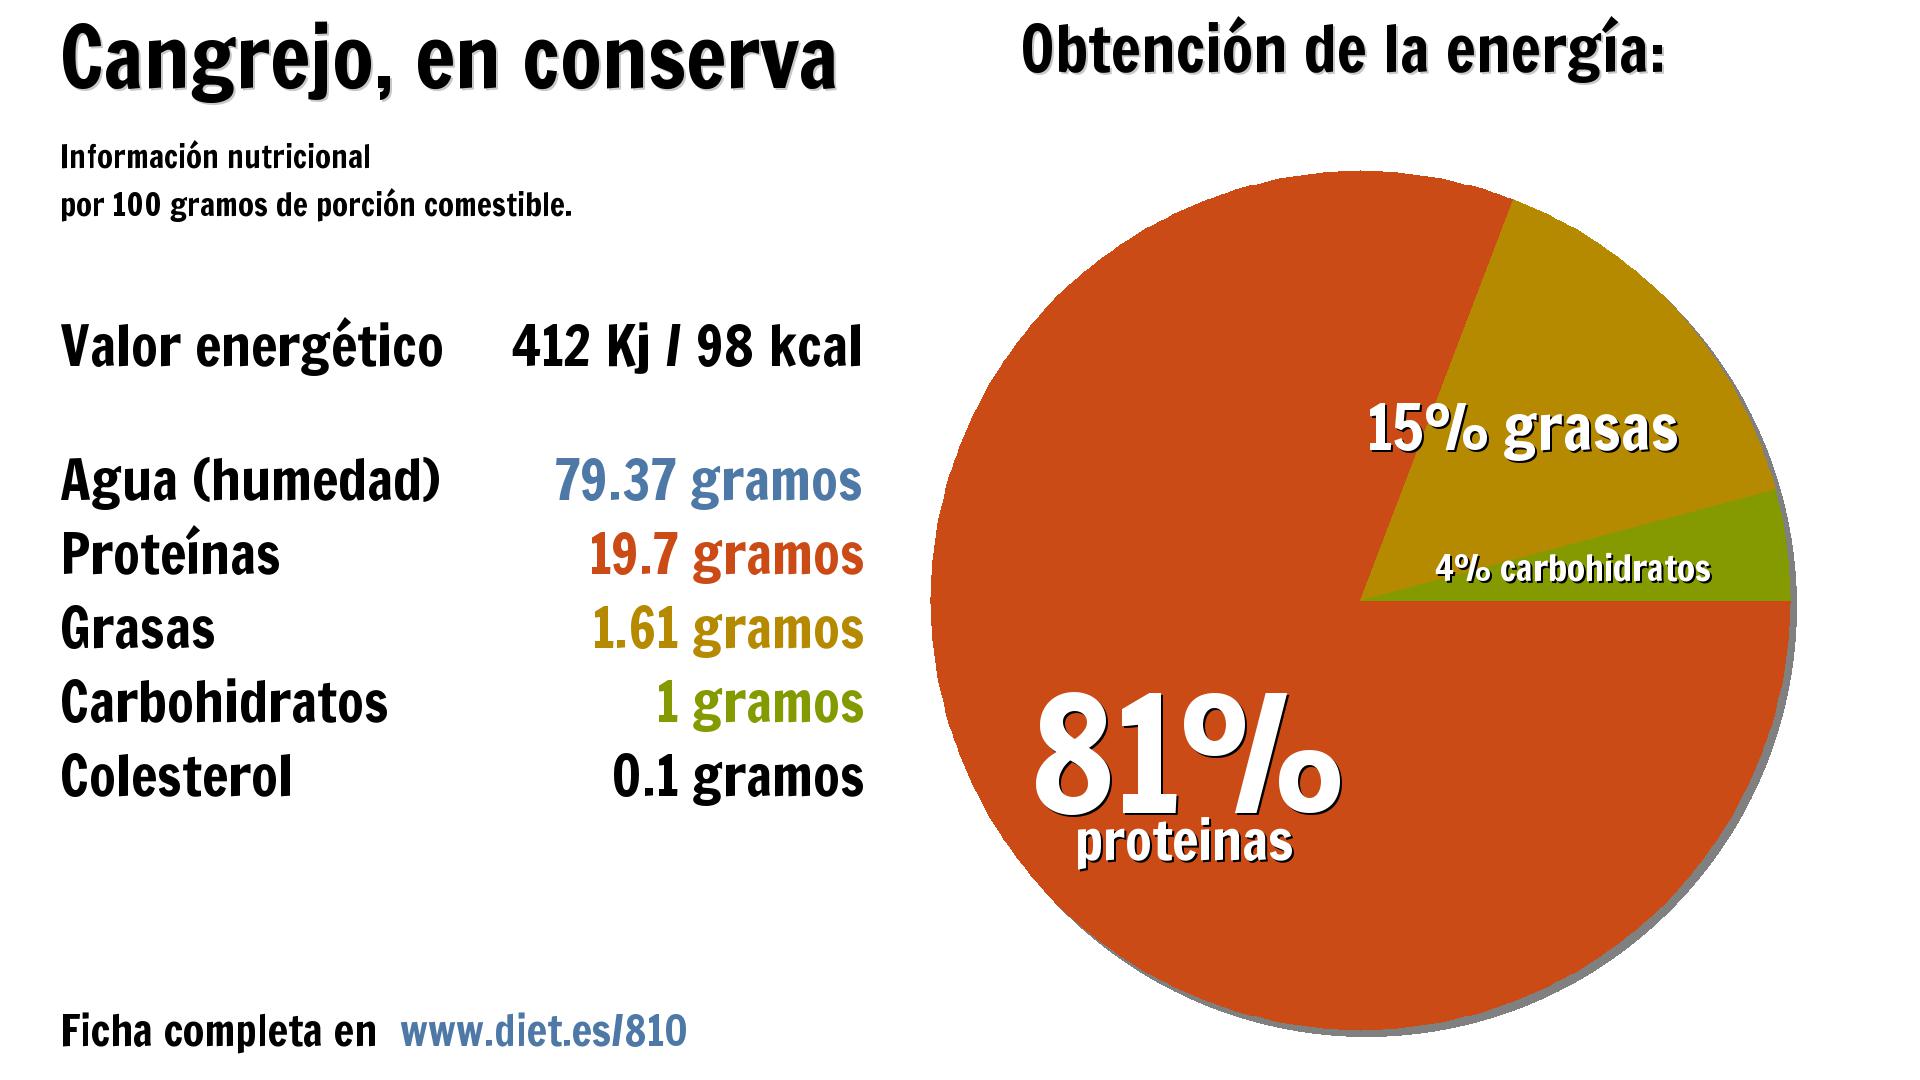 Cangrejo, en conserva: energía 412 Kj, agua 79 g., proteínas 20 g., grasas 2 g. y carbohidratos 1 g.